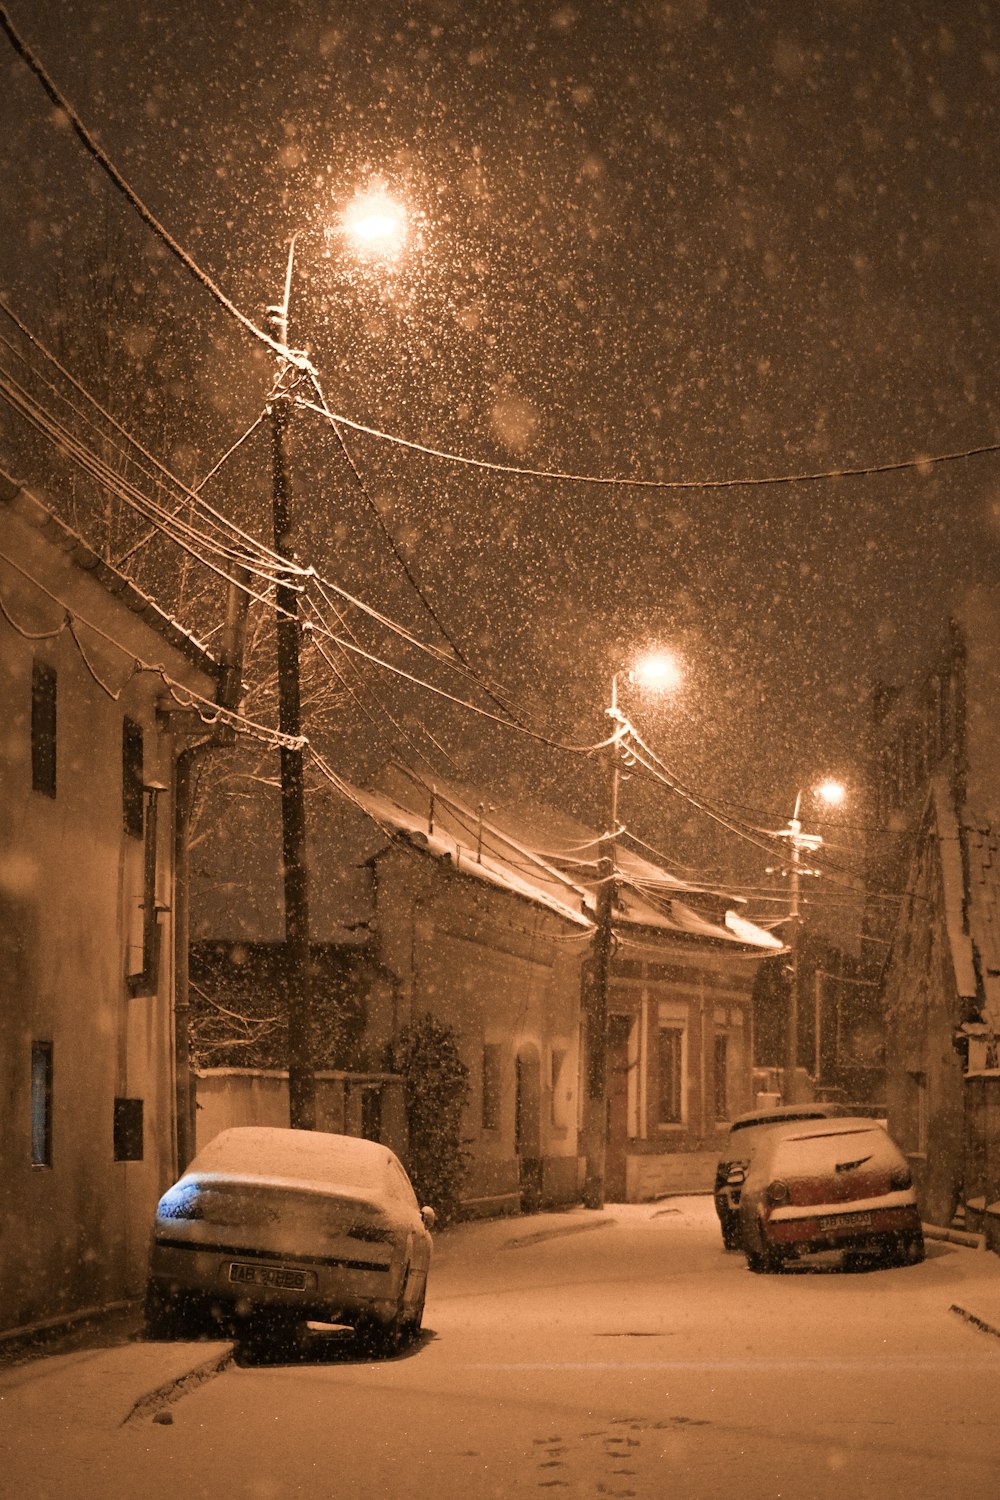 Deux voitures garées dans une rue enneigée la nuit